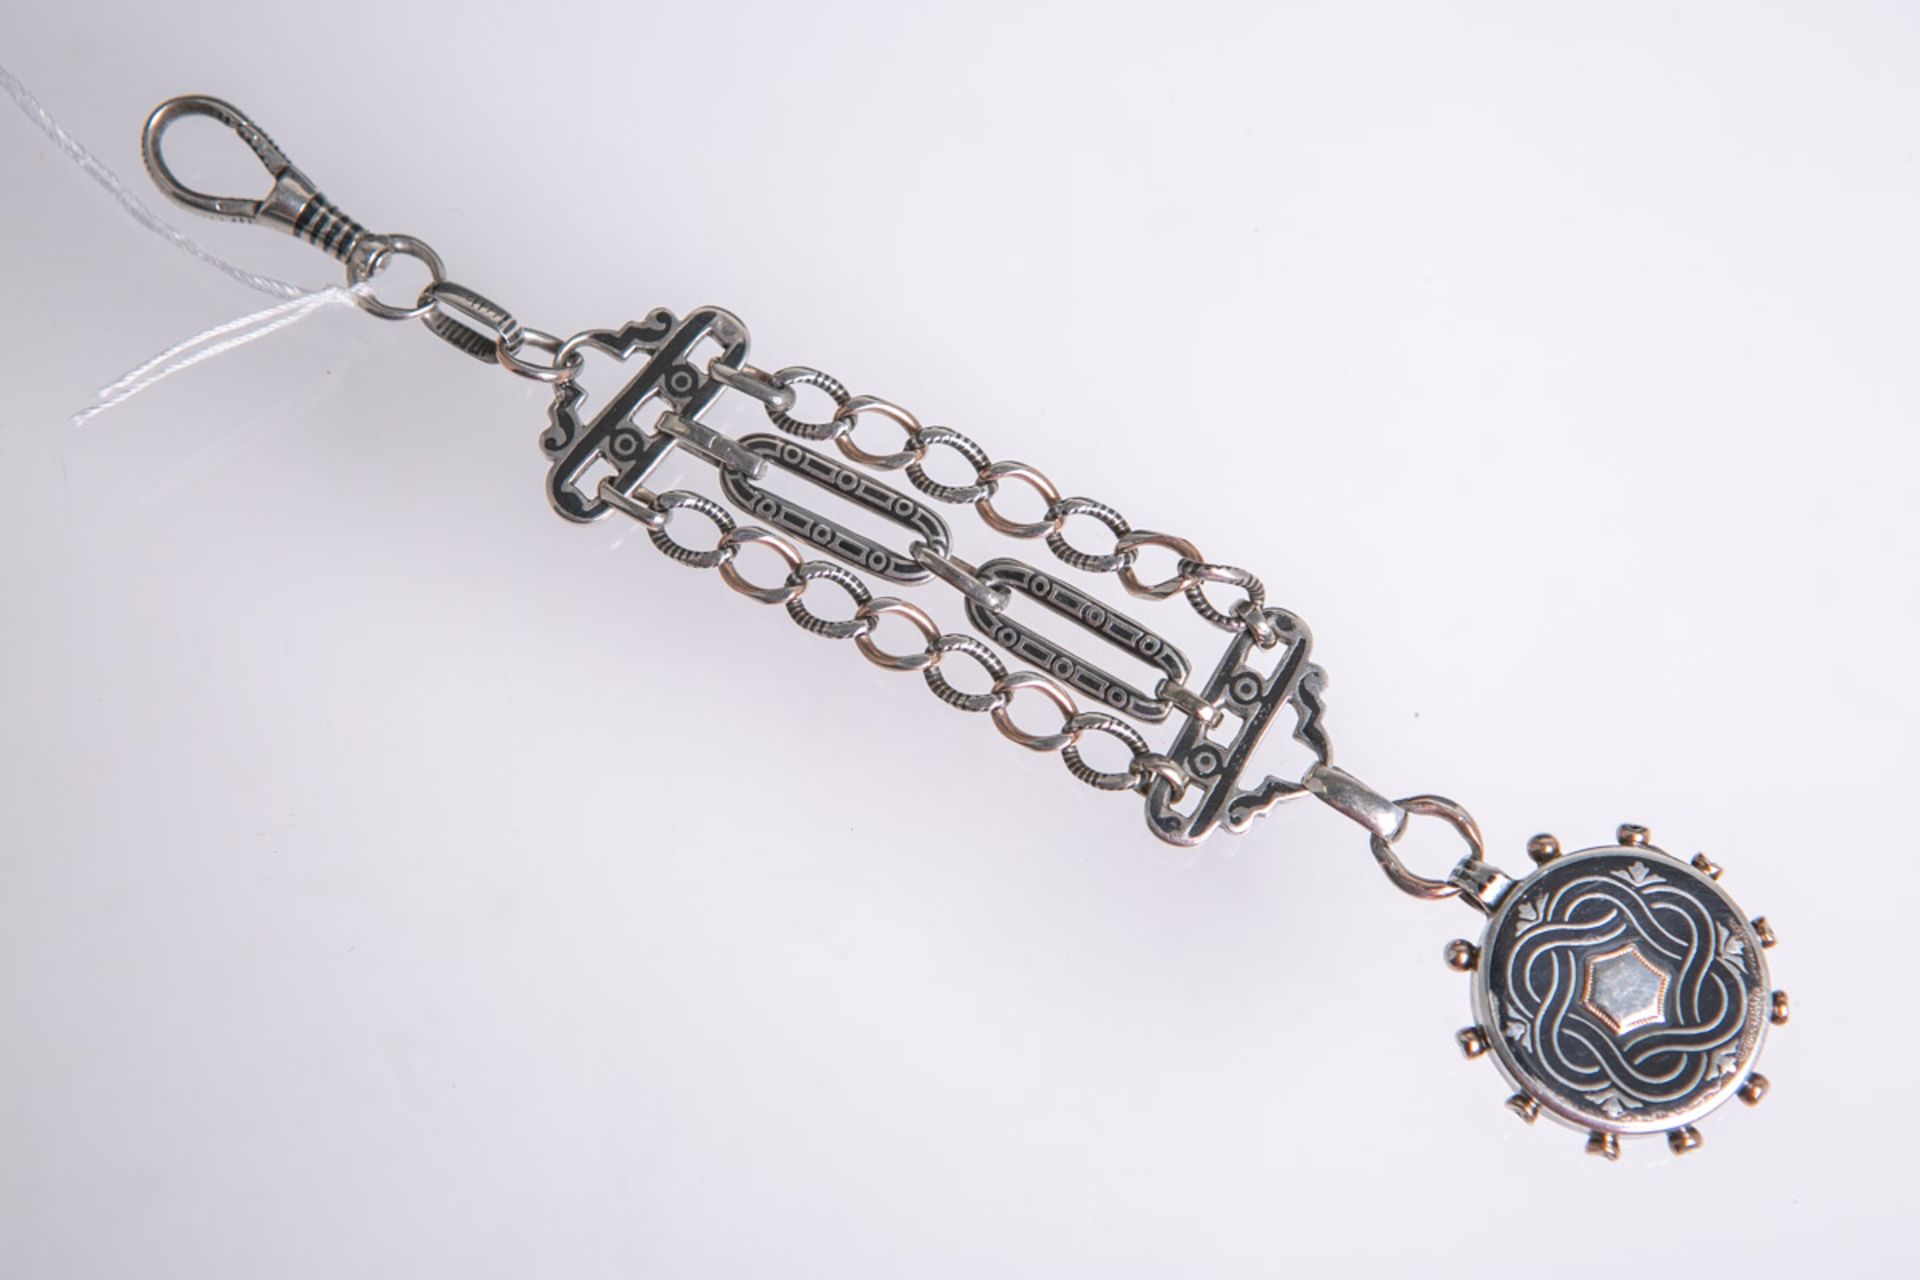 Taschenuhranhänger-/zipel aus Silber in Tulatechnik (wohl um 1900), mit aufklappbarem